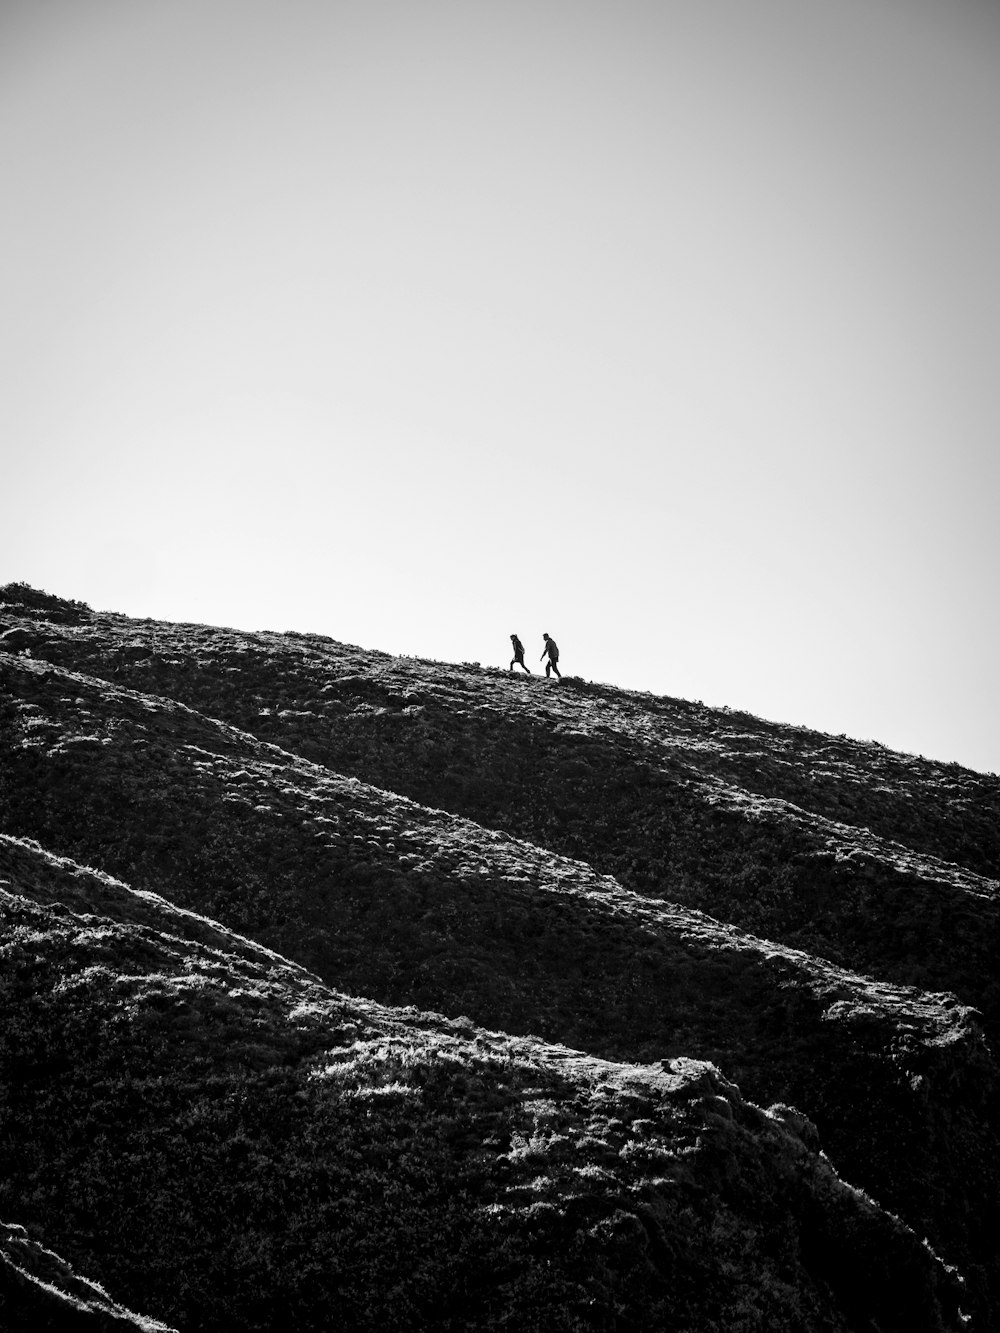 언덕 위를 걷는 사람의 회색조 사진